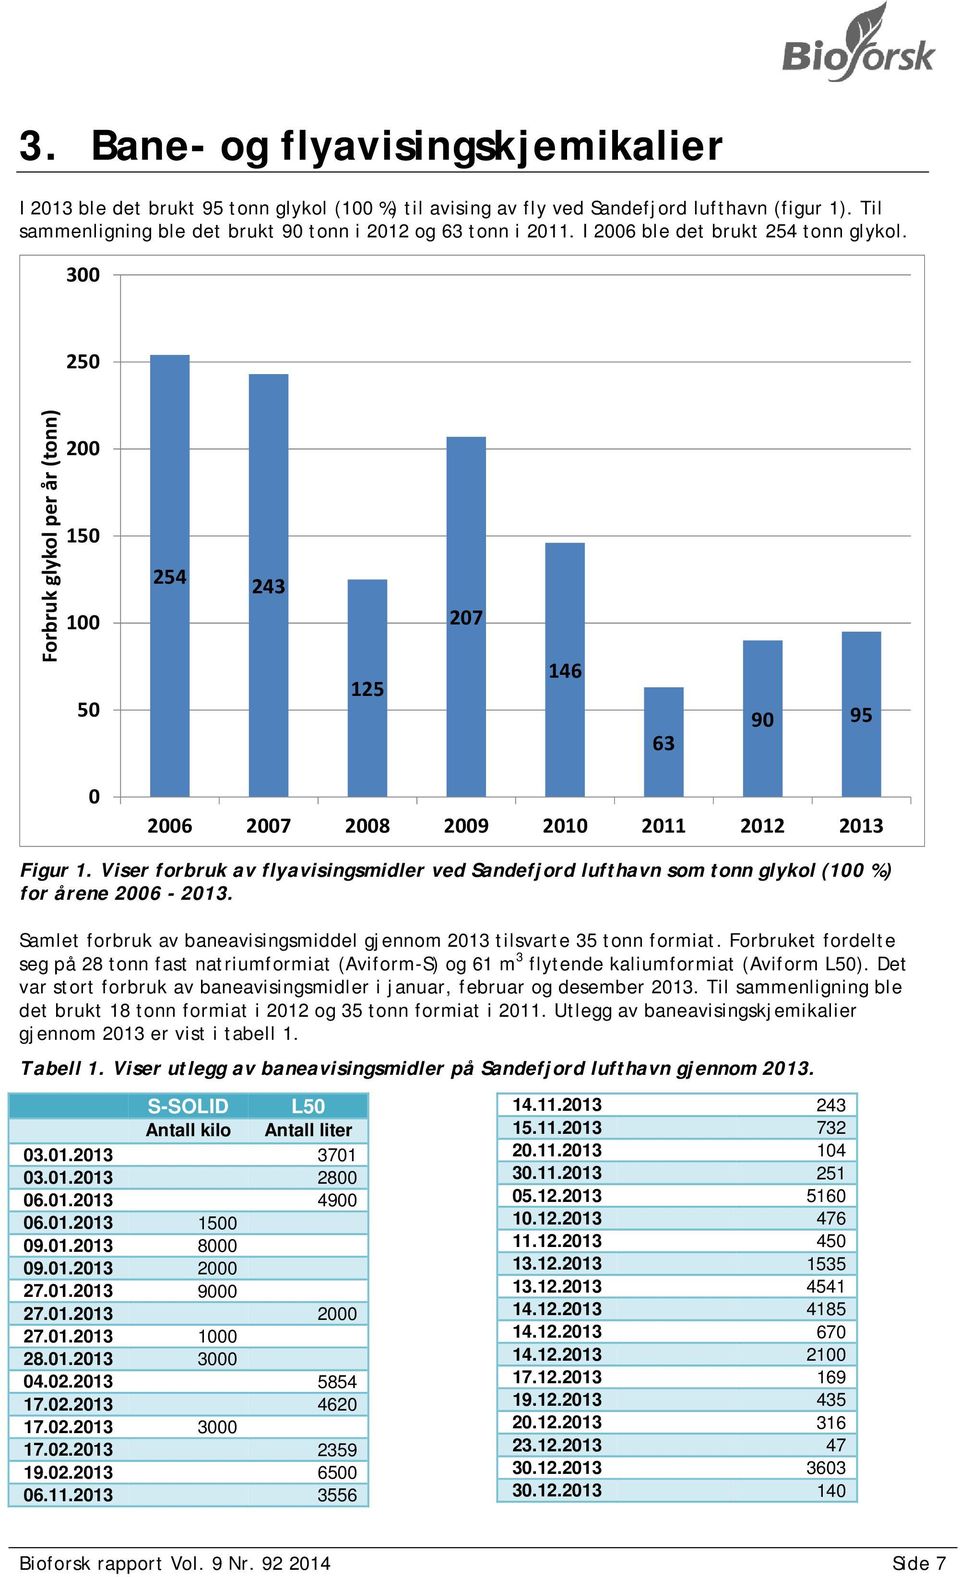 Viser forbruk av flyavisingsmidler ved Sandefjord lufthavn som tonn glykol (100 %) for årene 2006-2013. Samlet forbruk av baneavisingsmiddel gjennom 2013 tilsvarte 35 tonn formiat.